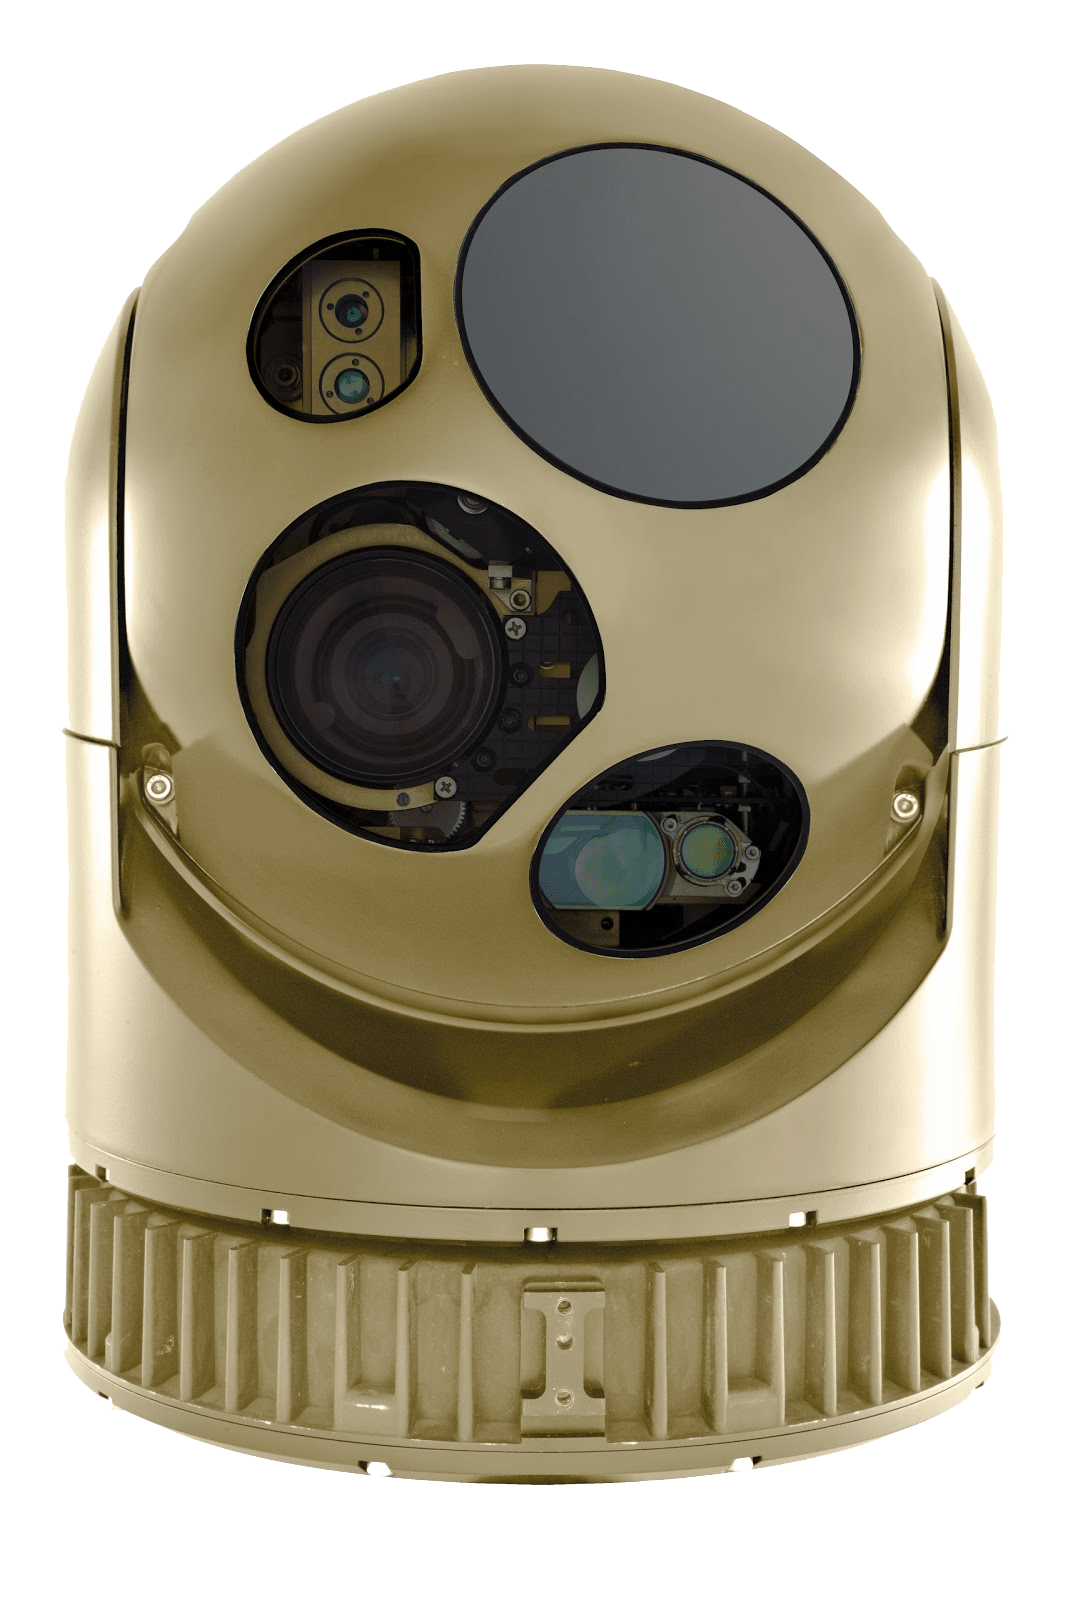 Une image montrant la caméra MX-10GS de L-3 WESCAM, qui est ronde et dorée.